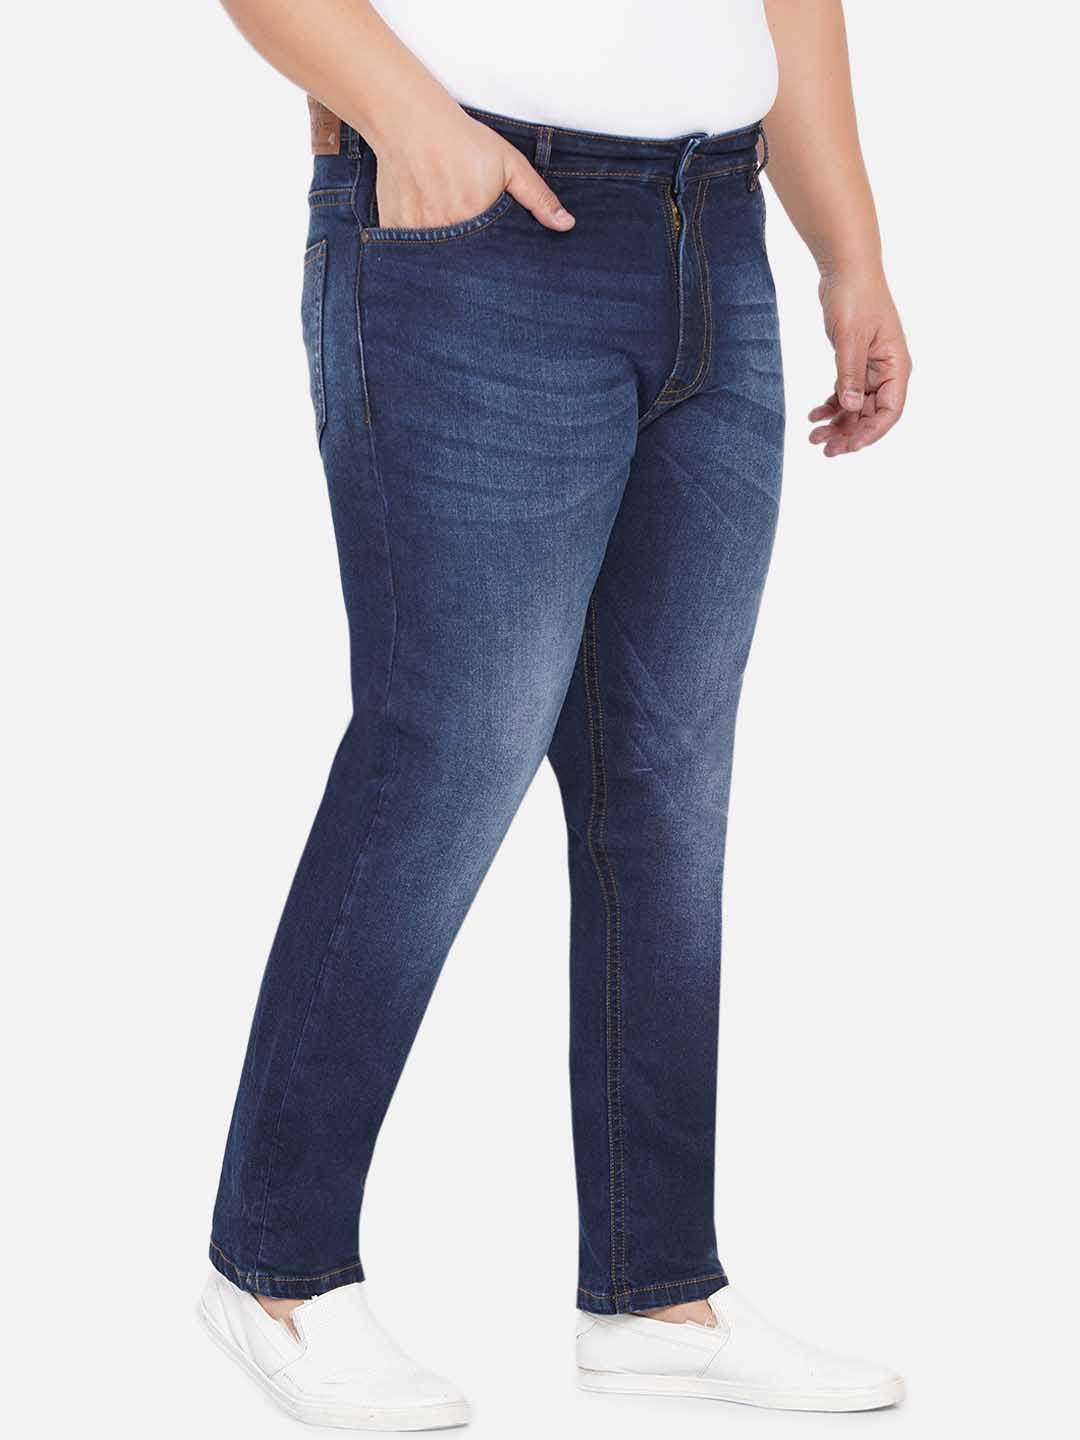 bottomwear/jeans/JPJ12233/jpj12233-3.jpg